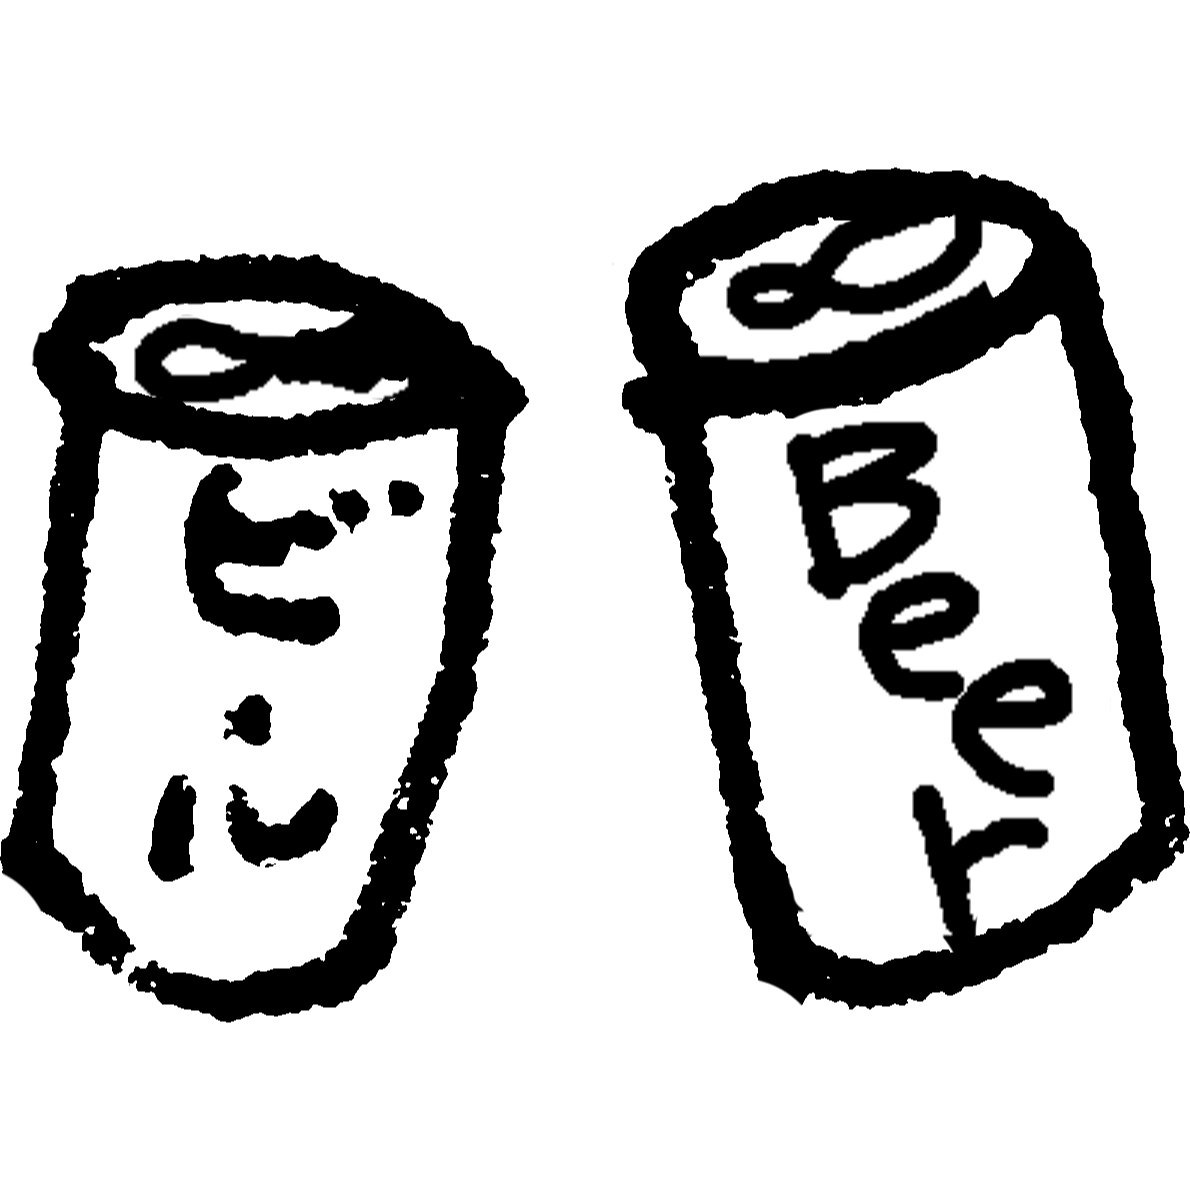 缶ビールのイラスト / Canned beer Illustration